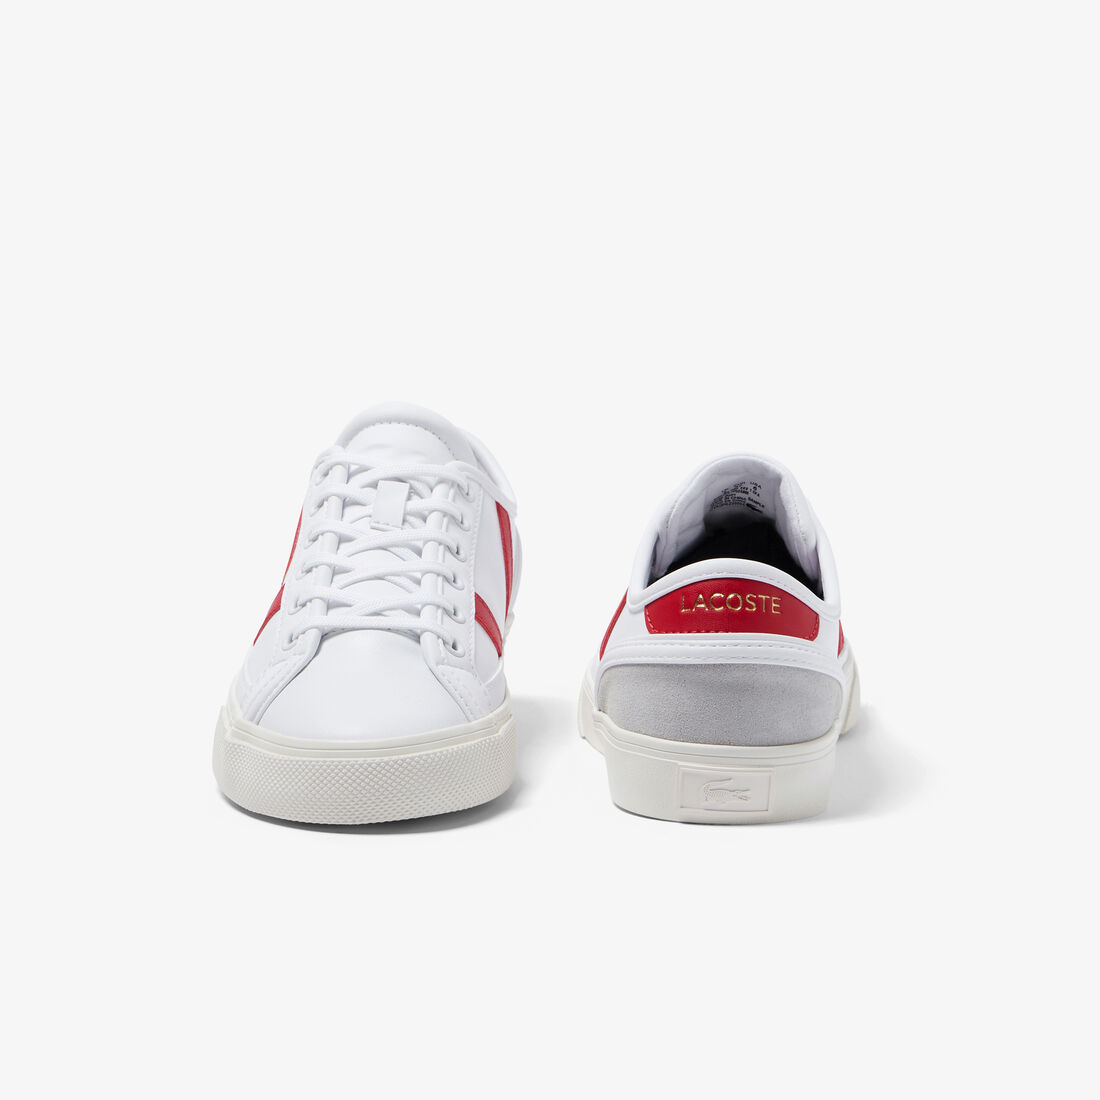 Lacoste Sideline Pro Synthetik Sneakers Damen Weiß Rot | PAMV-35894